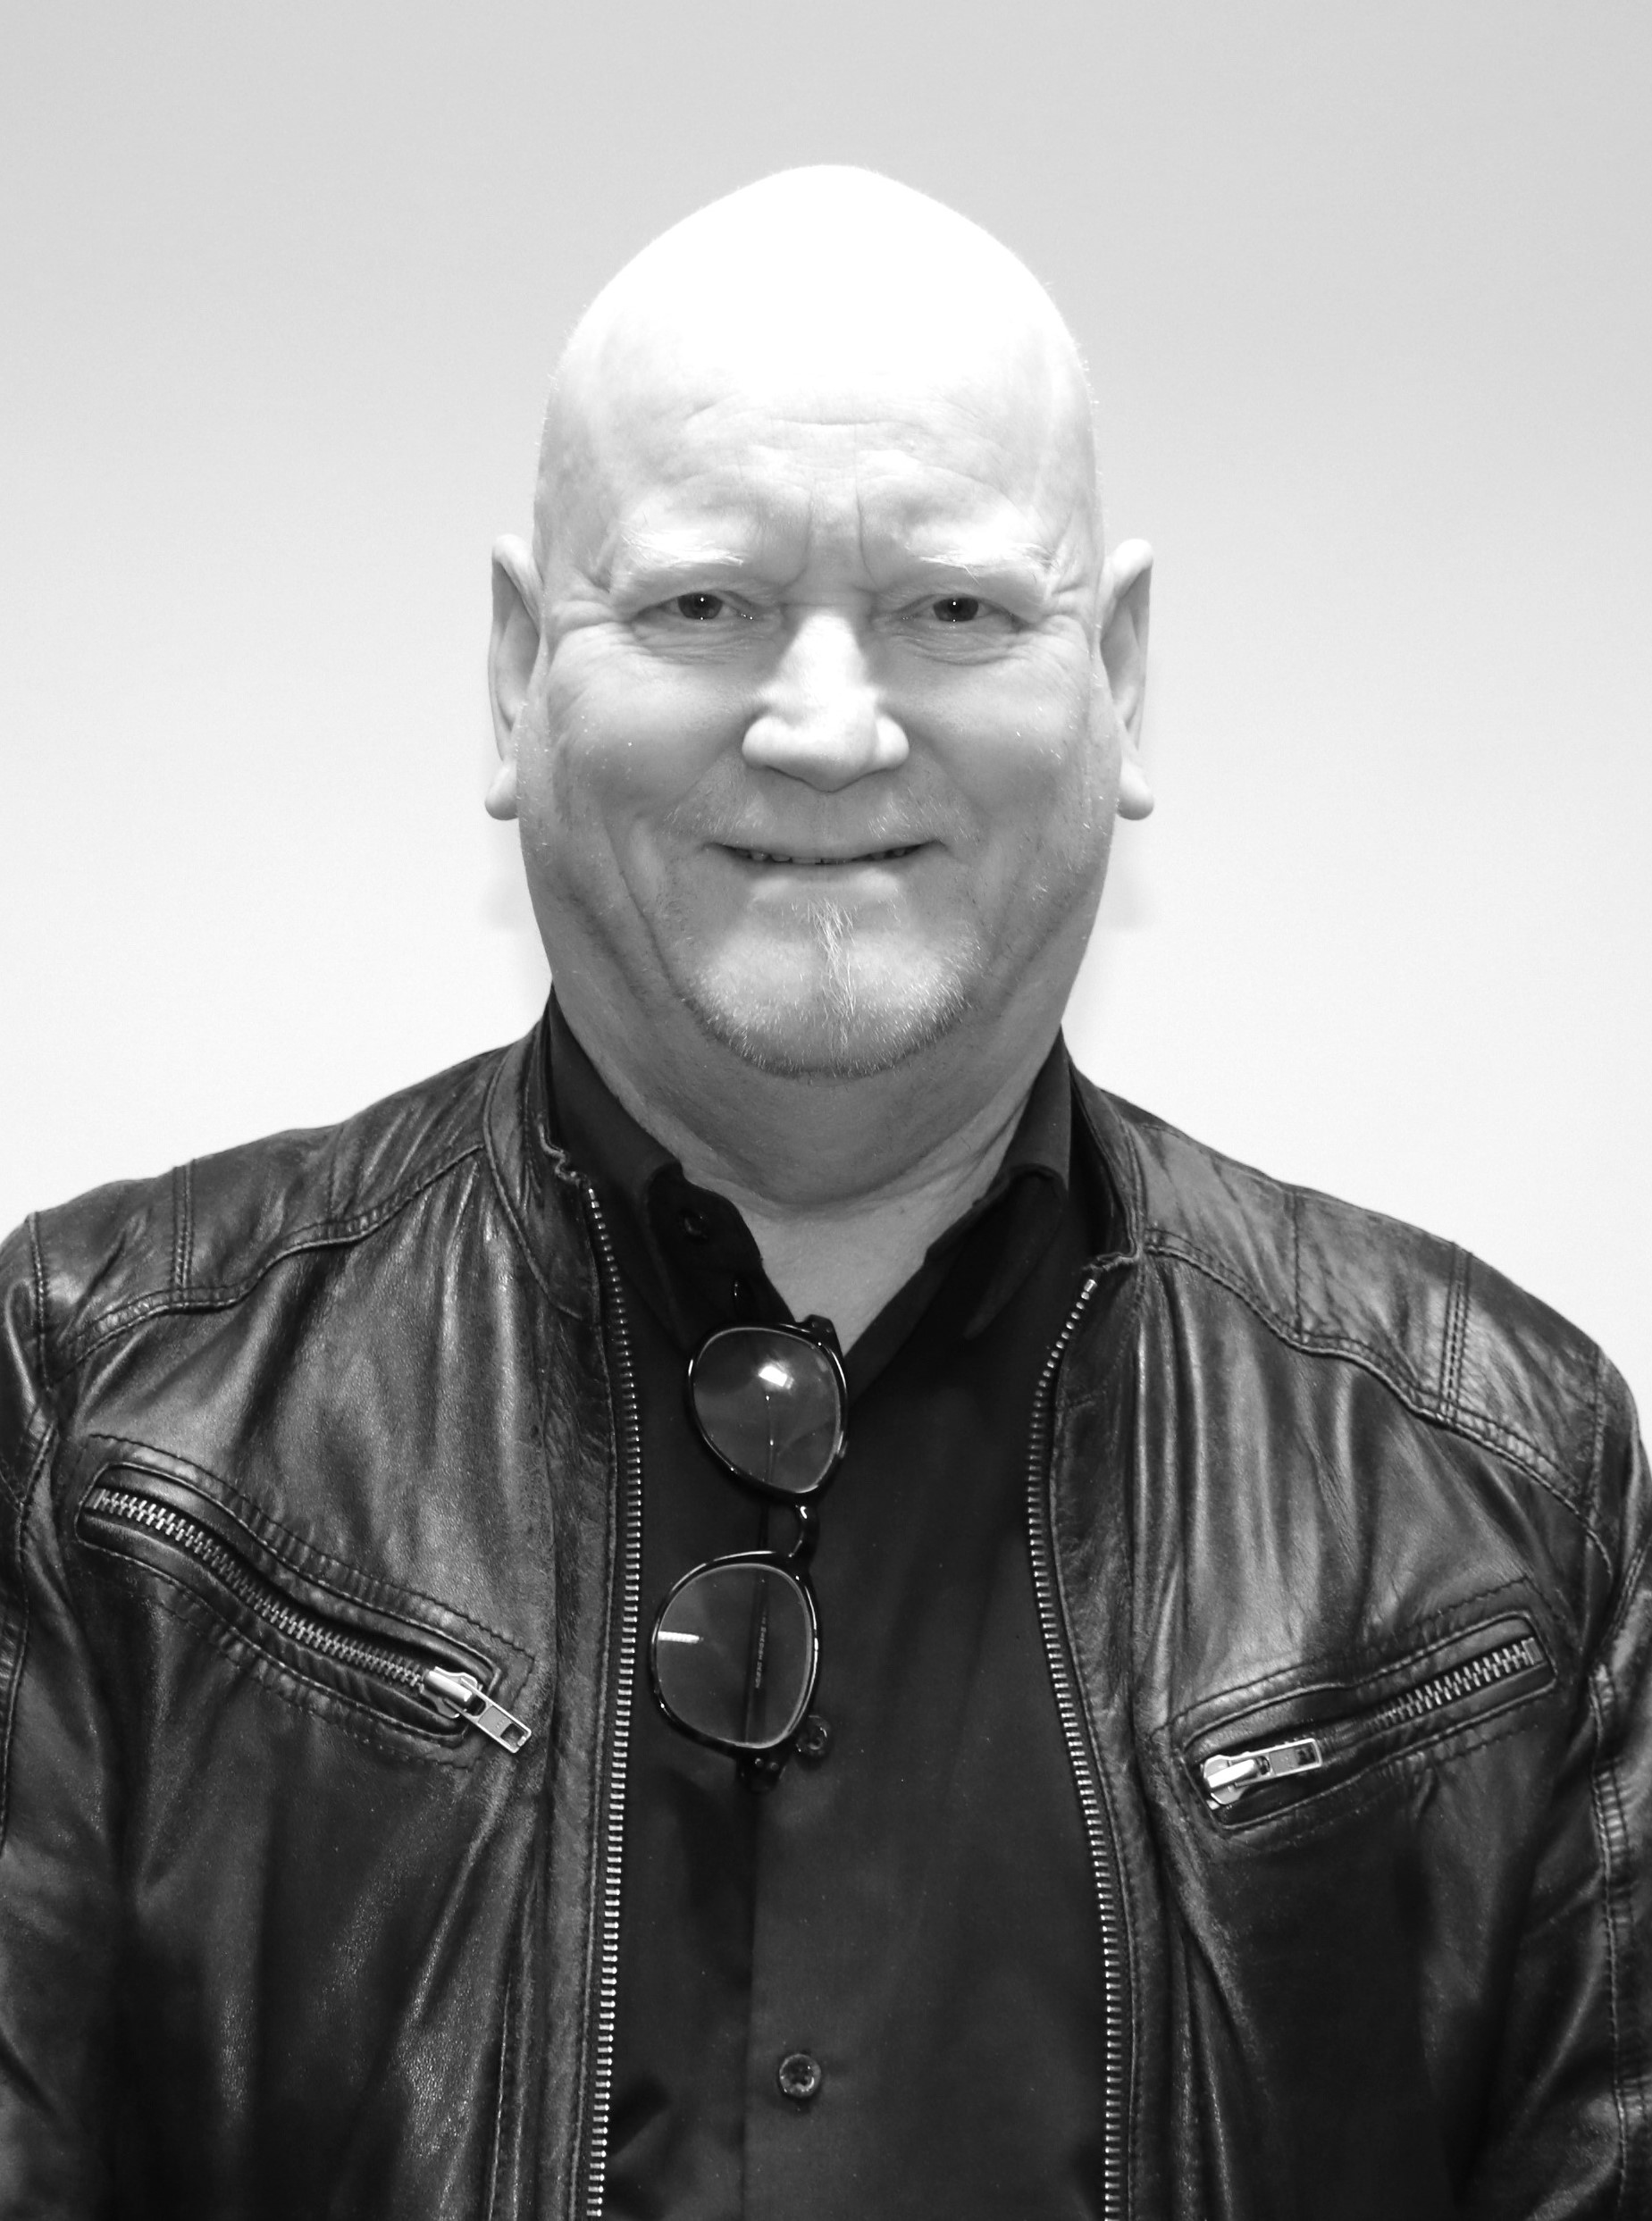 Ett svartvitt foto av en skallig man i en skinnjacka.